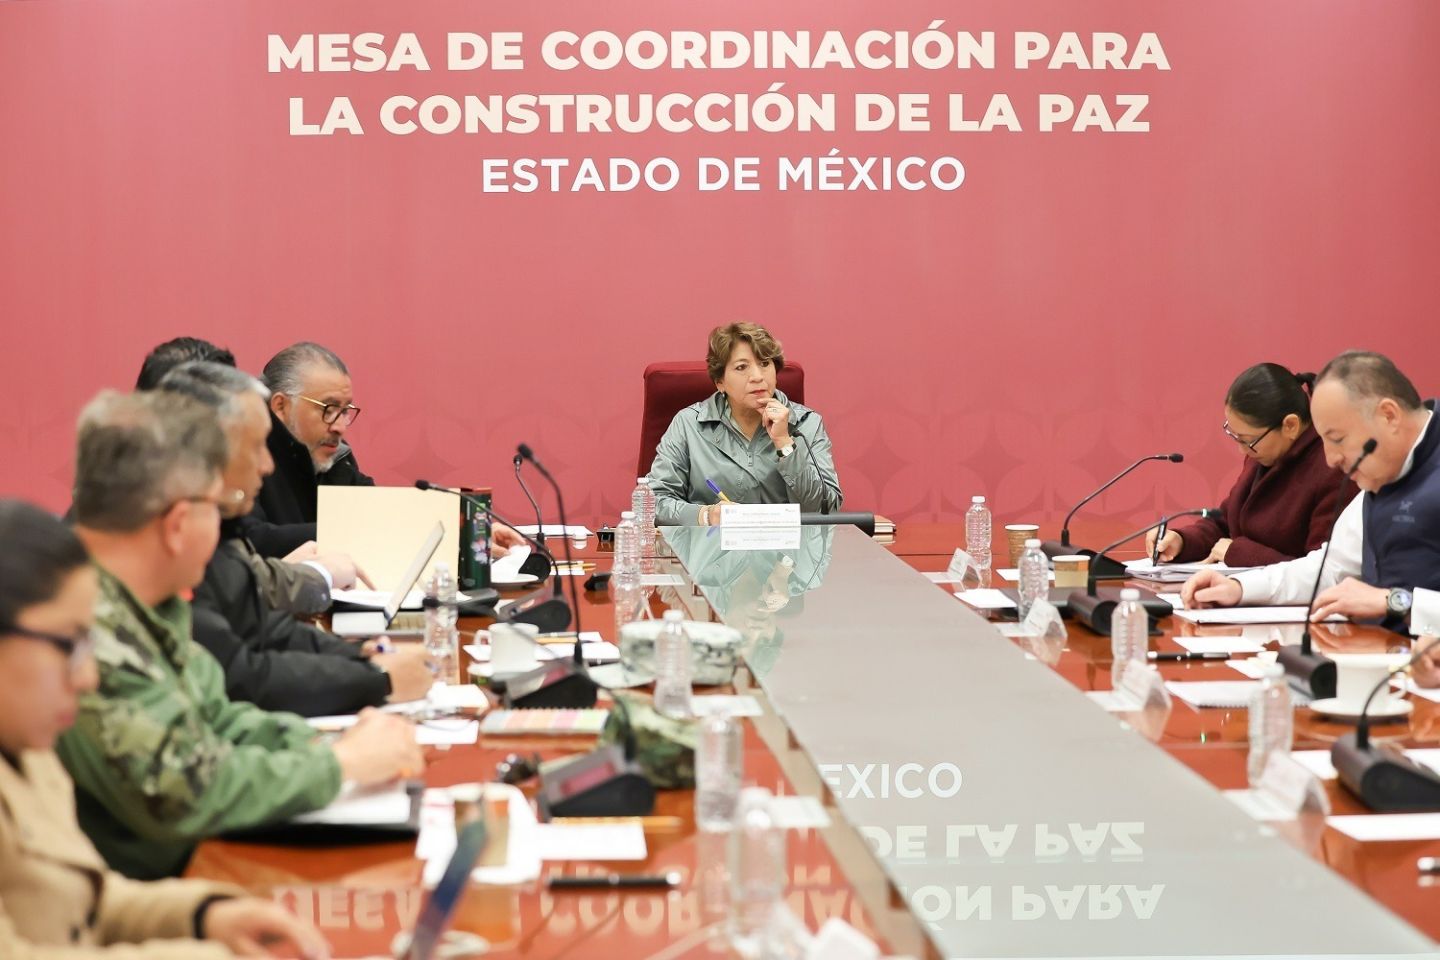 El Gobierno de Delfina Gómez Reduce el Robo de Combustible en el Estado de México; Bajan Cifras de Huachicoleo